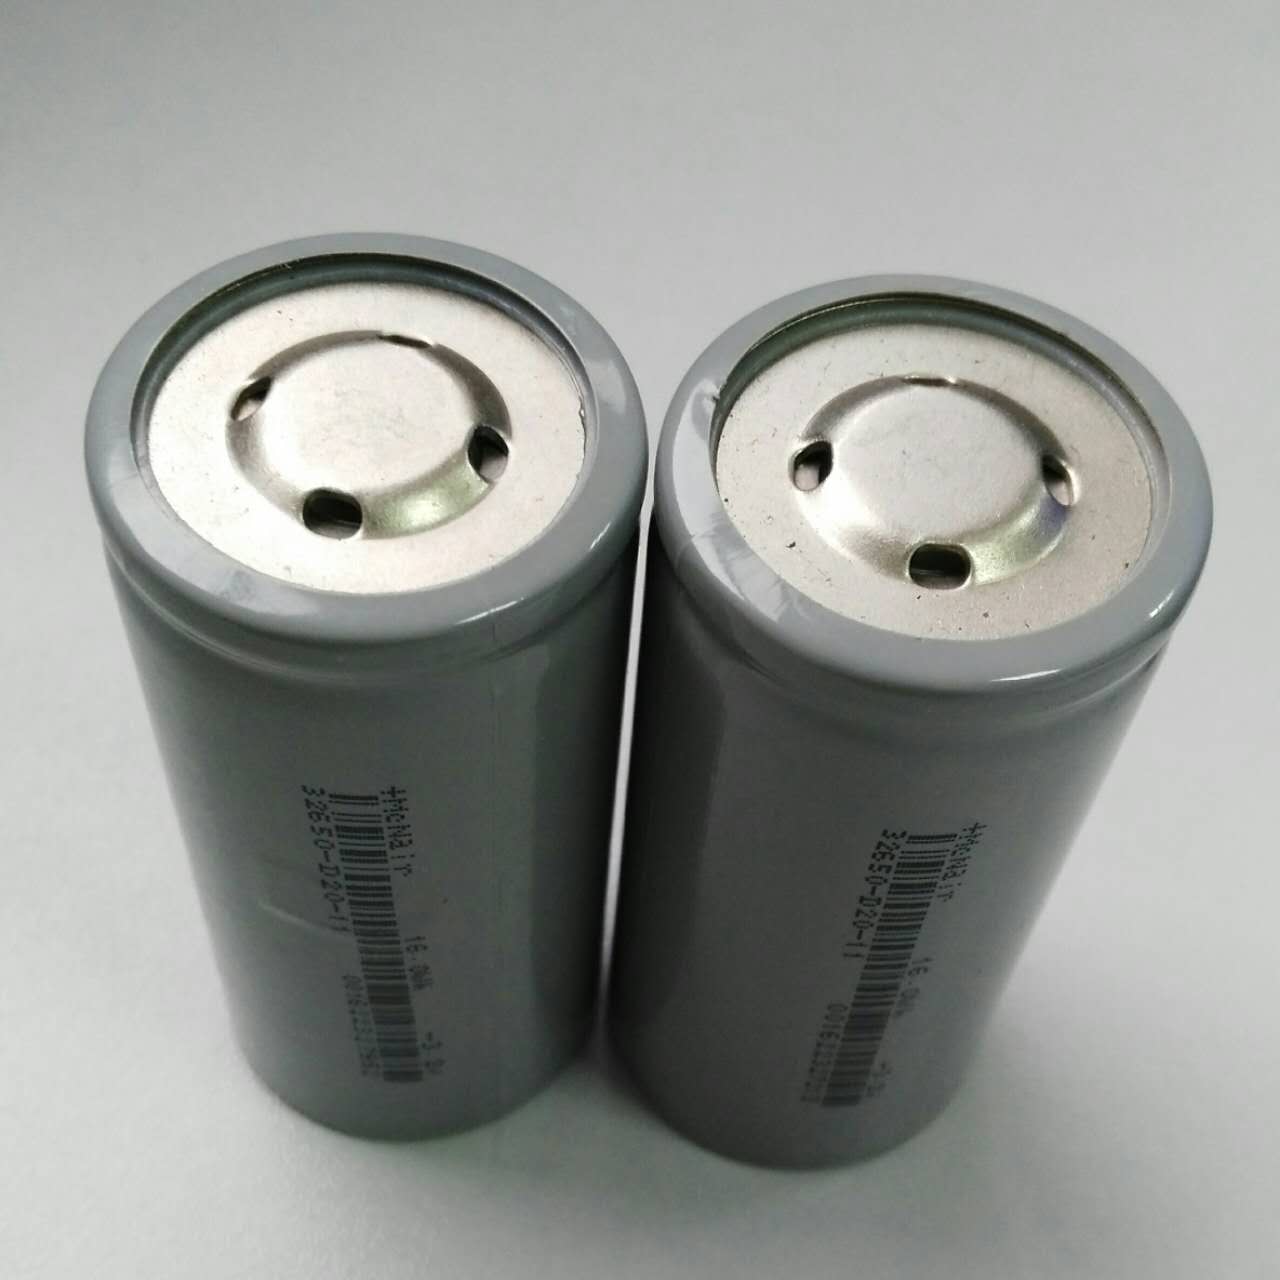 铁锂电池供应商铁锂电池厂家铁锂电池报价深圳铁锂电池铁锂 磷酸铁锂电池